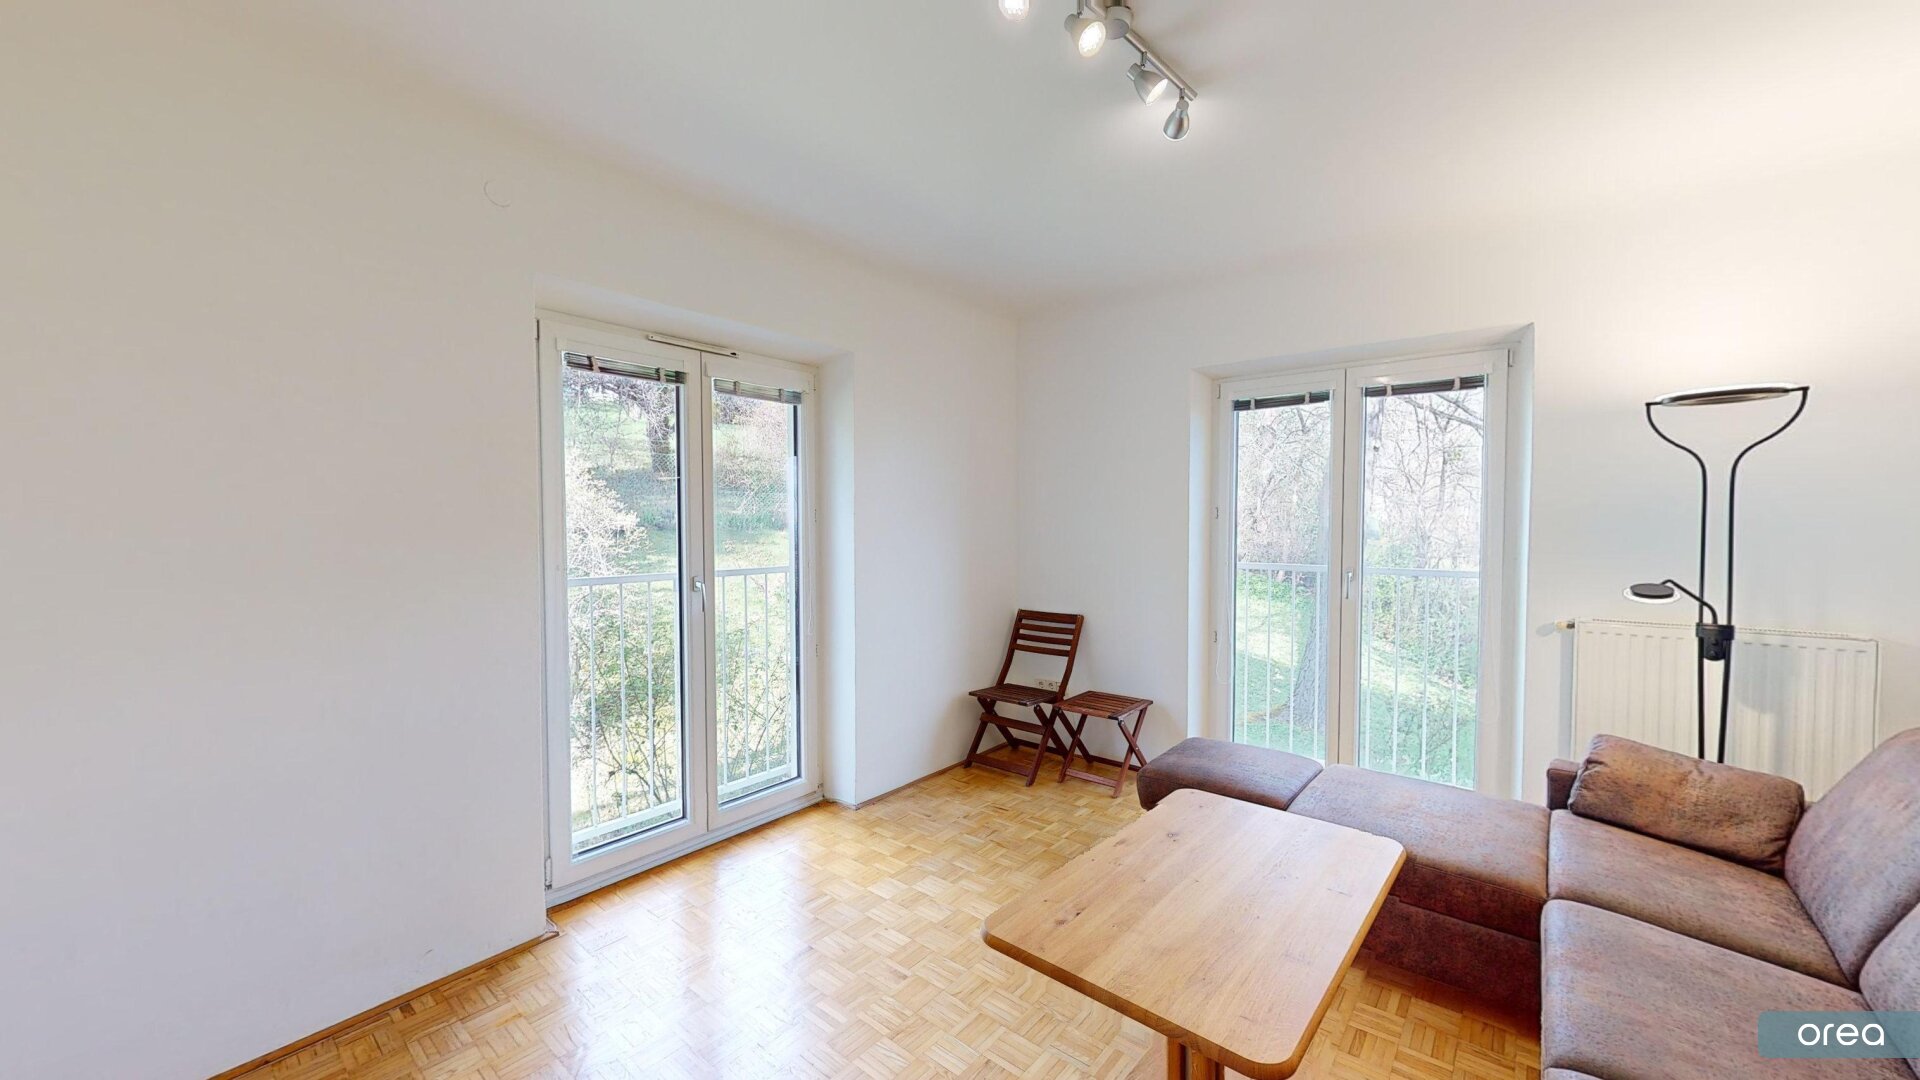 orea | Gemütliche 2-Zimmer-Wohnung mit grüner Umgebung nähe Pötzleinsdorfer Schlosspark | Smart besichtigen · Online anmieten